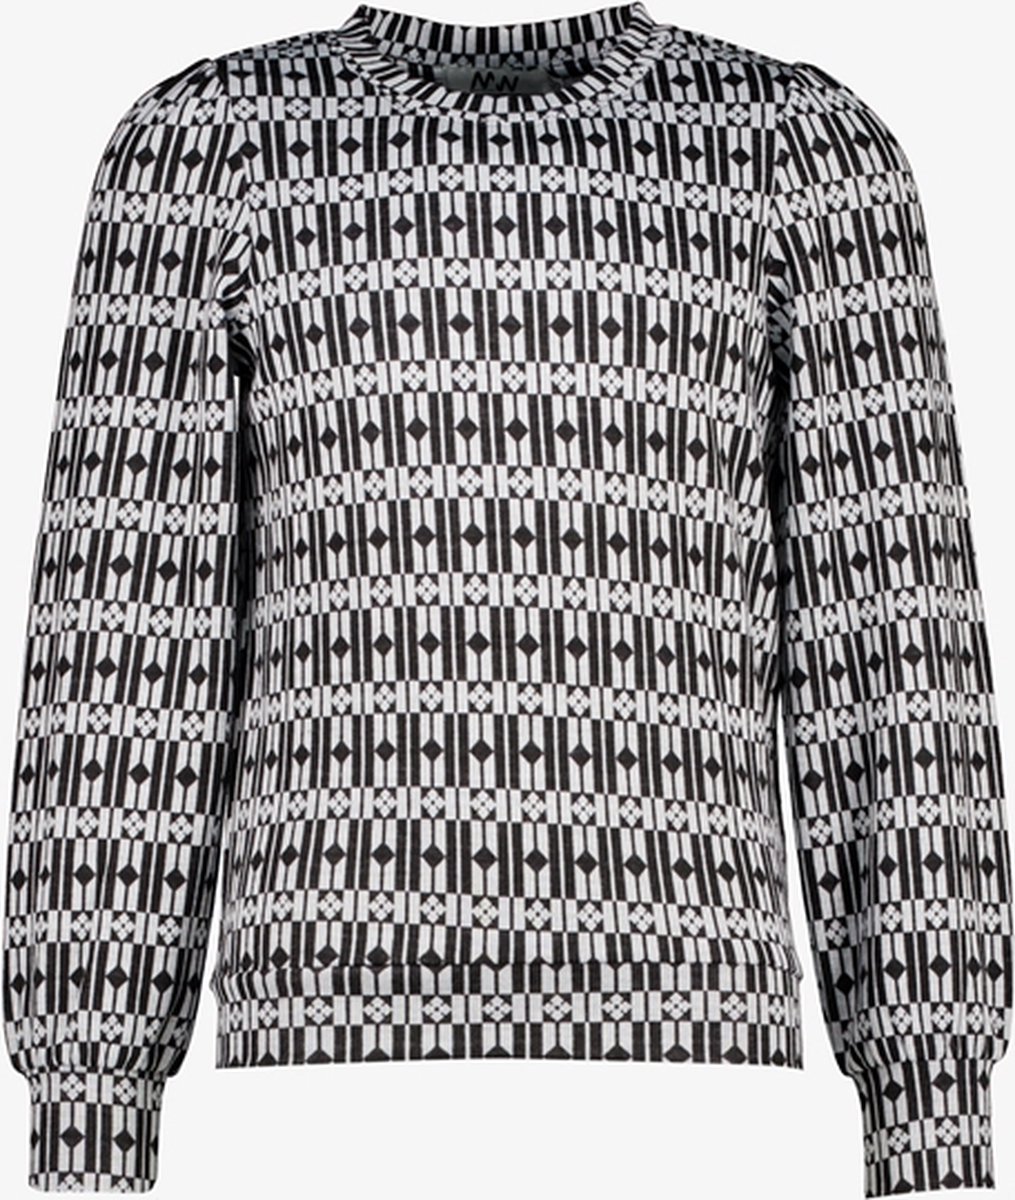 MyWay meisjes trui met print zwart/wit - Maat 158/164